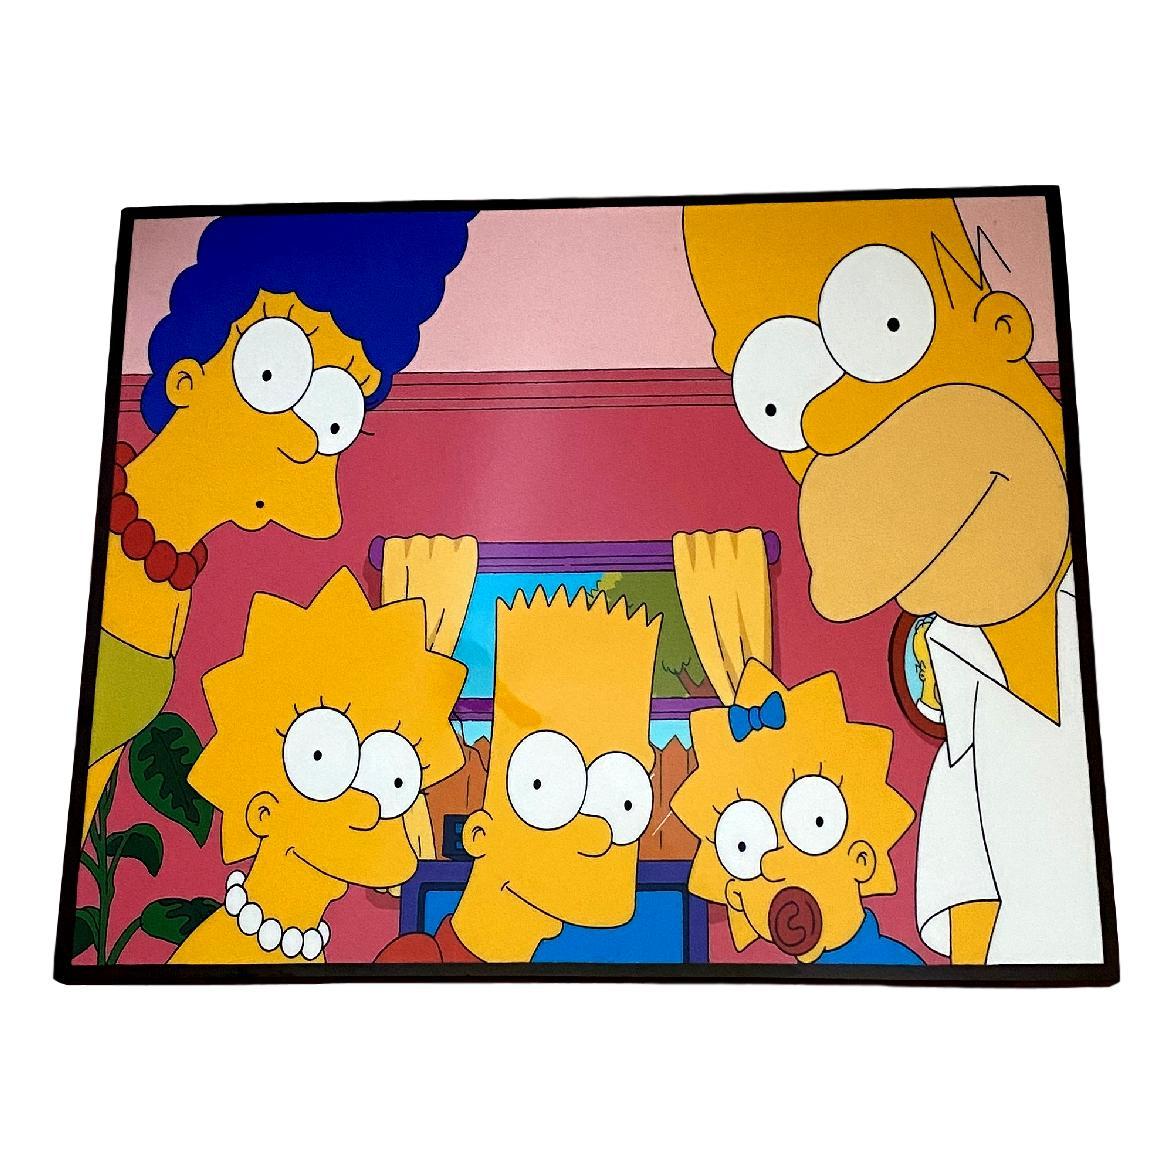 楽天市場 送料無料 ザ シンプソンズ The Simpsons アートパネル 壁掛け 据え置き 壁掛けフック付き アーティスト Popパネル インテリア アートフレーム ポスター Cool クール 面白い かっこいい アート 雑貨 カフェ リビング 額付き 額縁 オシャレ Alice Alice 楽天